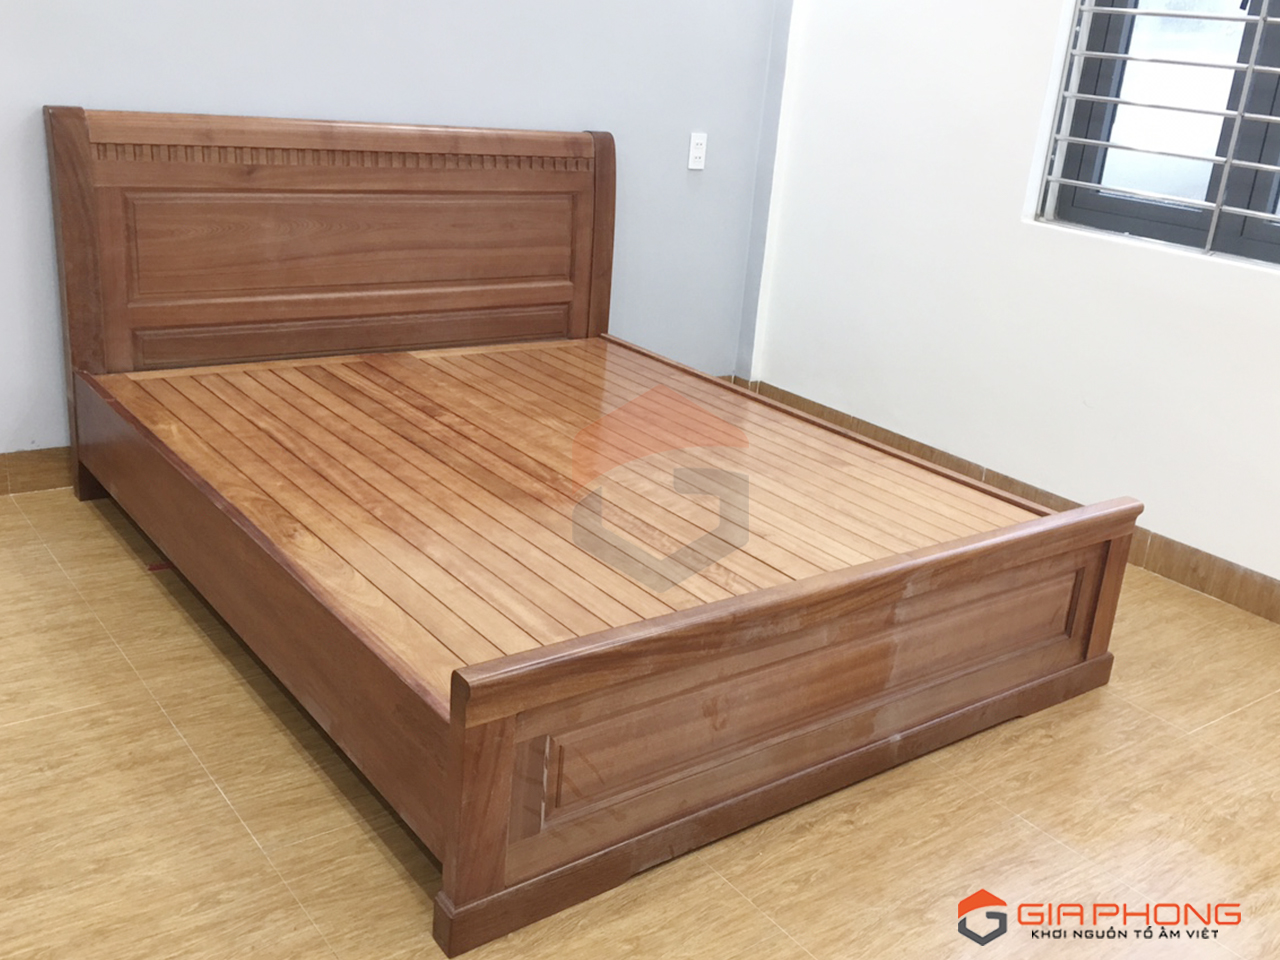 Giường gỗ đinh hương - Sự sáng tạo và tinh tế của giường gỗ đinh hương sẽ khiến bạn thích thú. Với kiểu dáng hiện đại và độ bền tuyệt vời, giường gỗ đinh hương sẽ là điểm nhấn đẹp mắt trong không gian phòng ngủ của bạn. Giấc ngủ ngon lành và sức khỏe tốt sẽ đến với bạn mỗi khi nằm trên chiếc giường này.